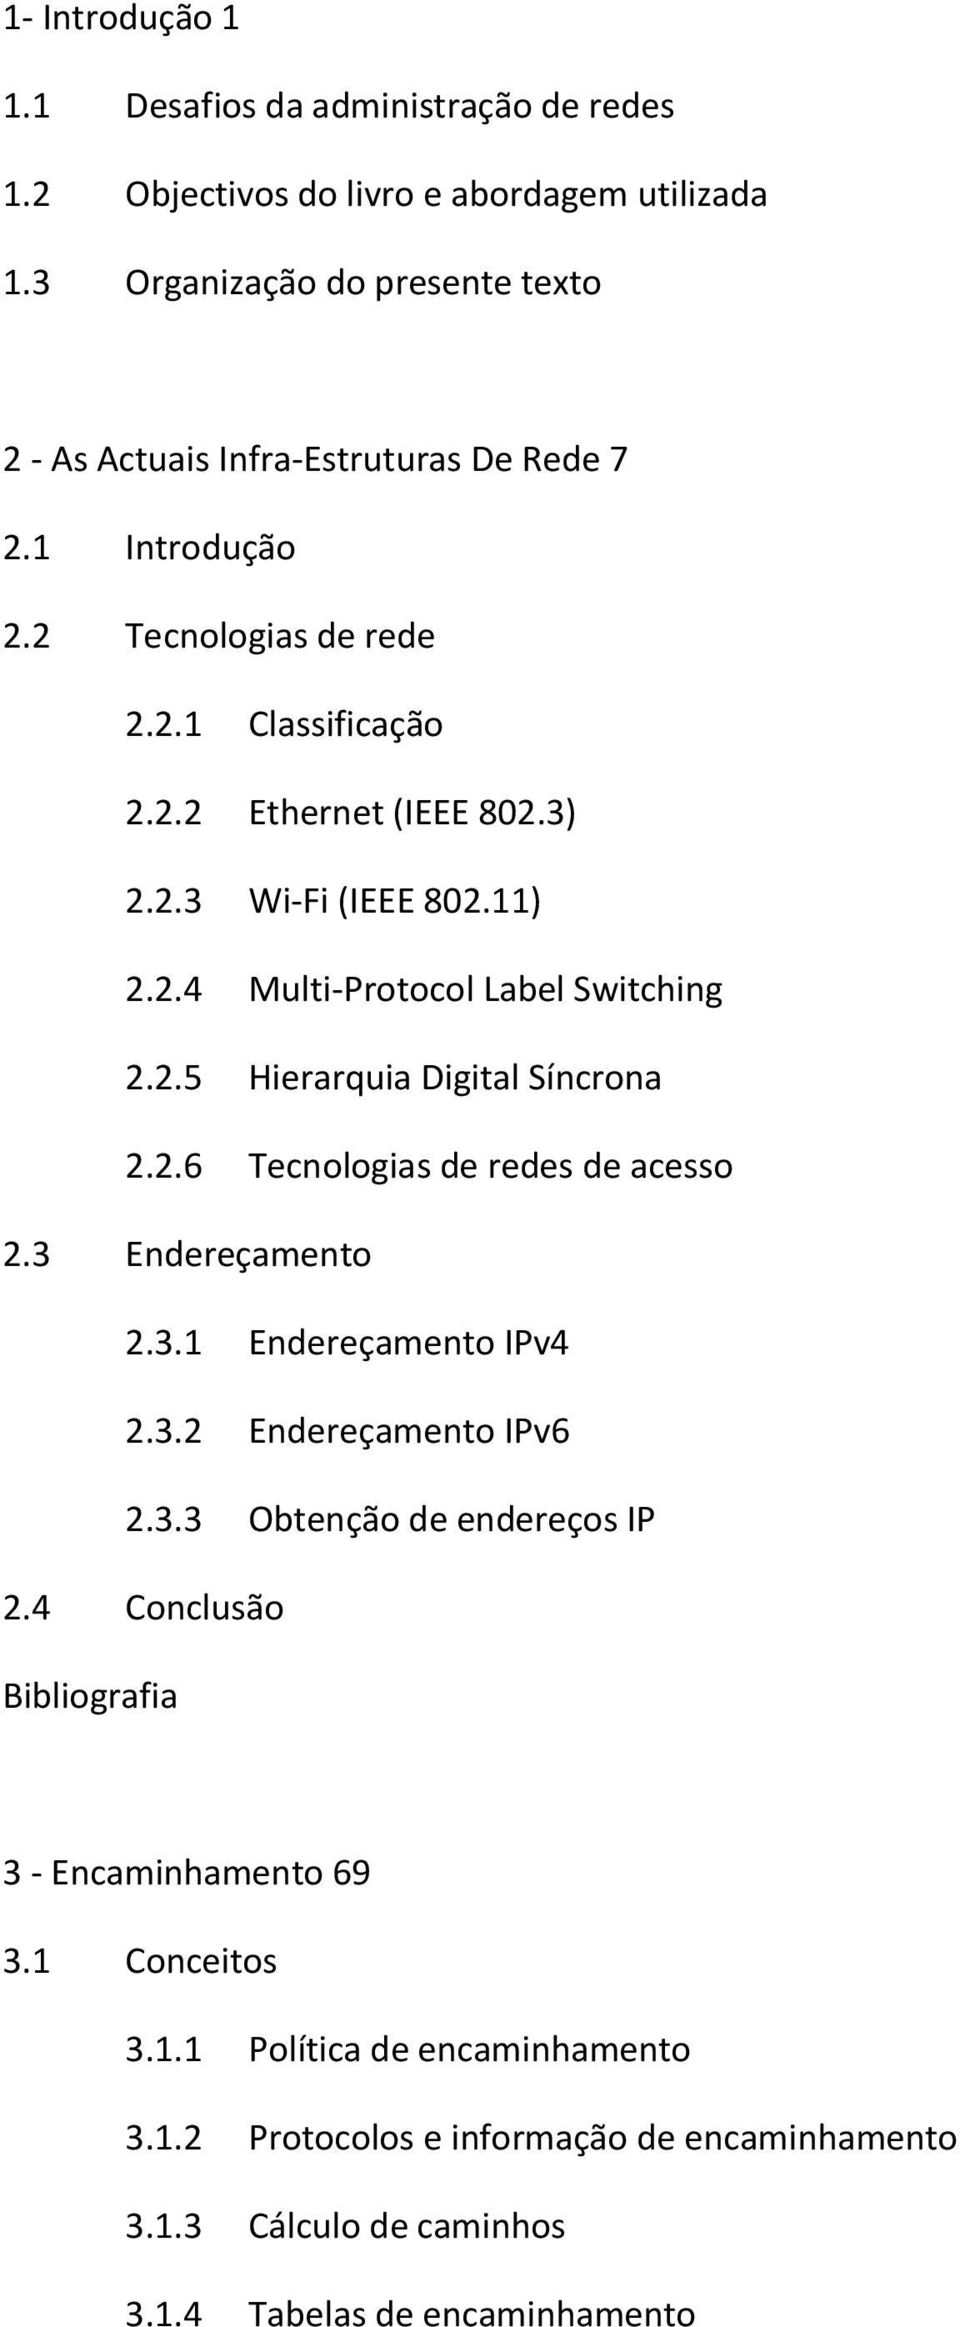 11) 2.2.4 Multi-Protocol Label Switching 2.2.5 Hierarquia Digital Síncrona 2.2.6 Tecnologias de redes de acesso 2.3 Endereçamento 2.3.1 Endereçamento IPv4 2.3.2 Endereçamento IPv6 2.